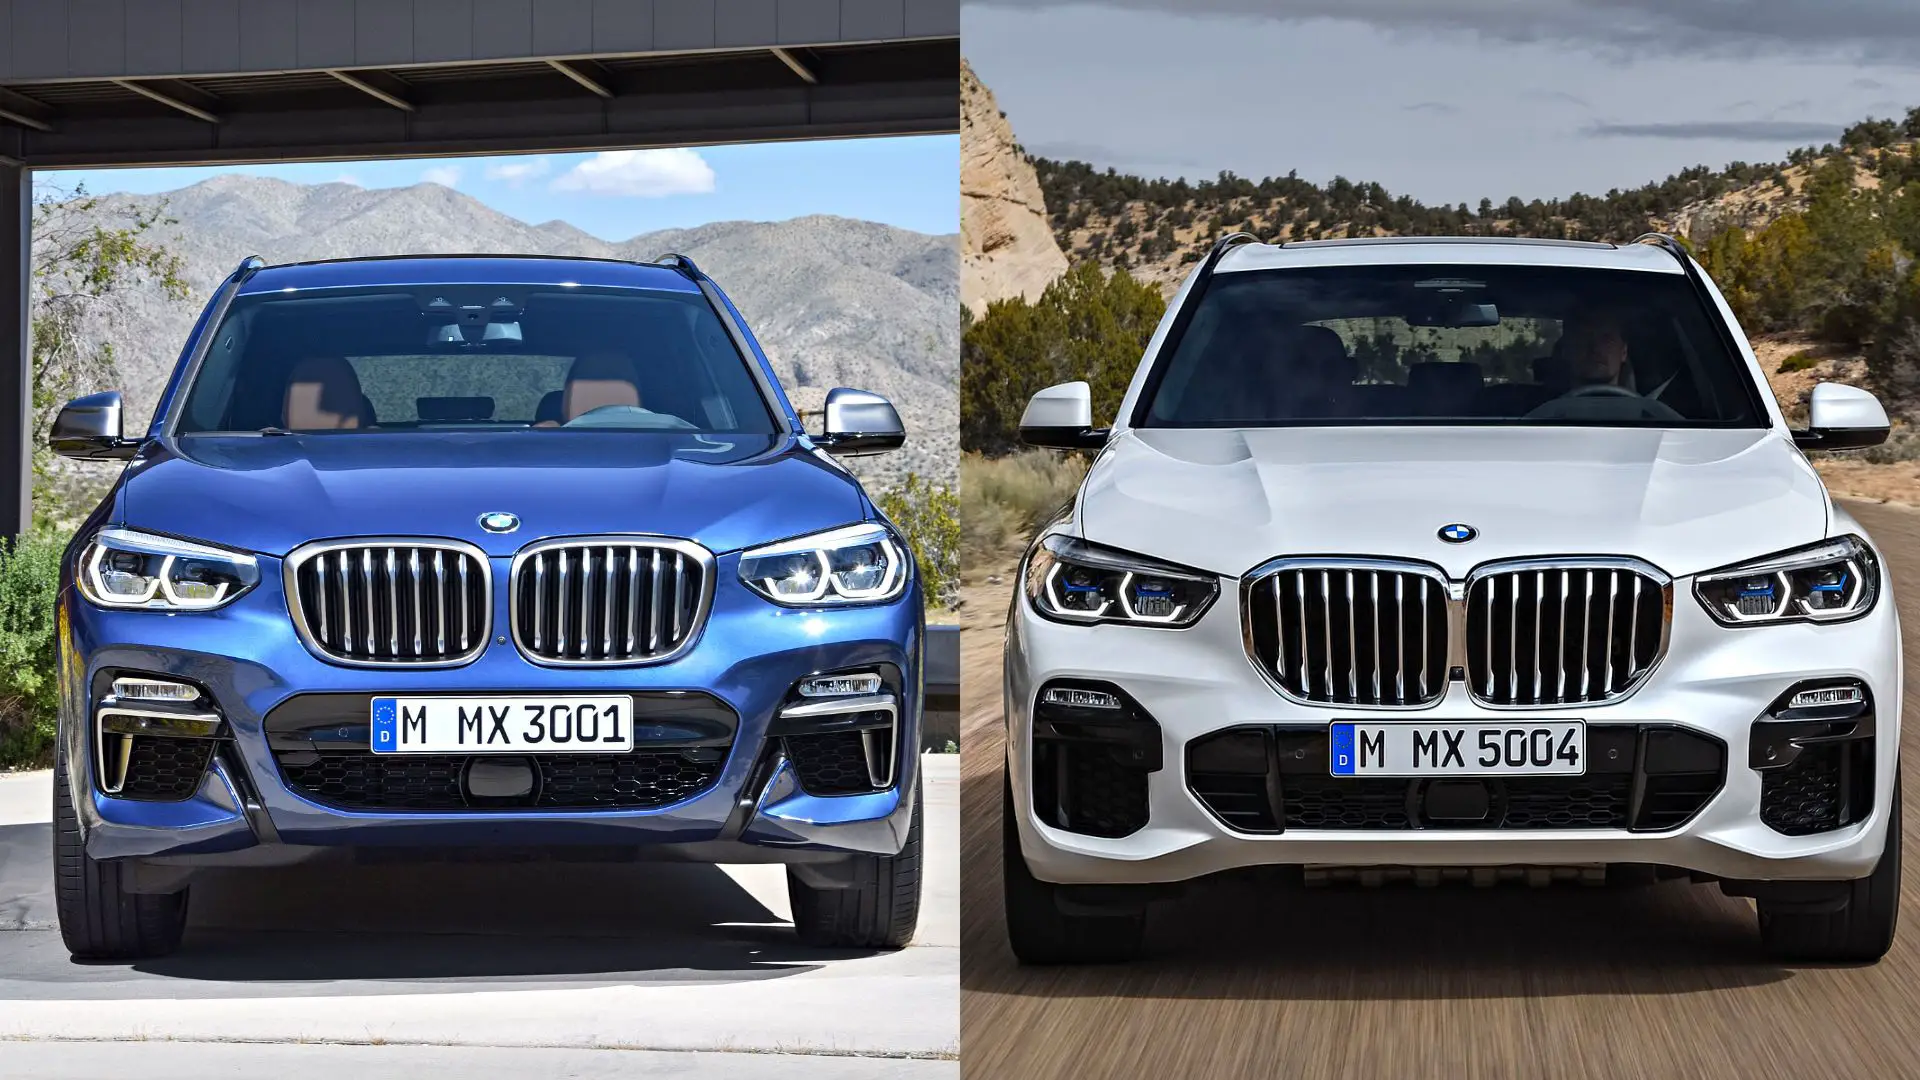 BMW X3 vs X5 comparison